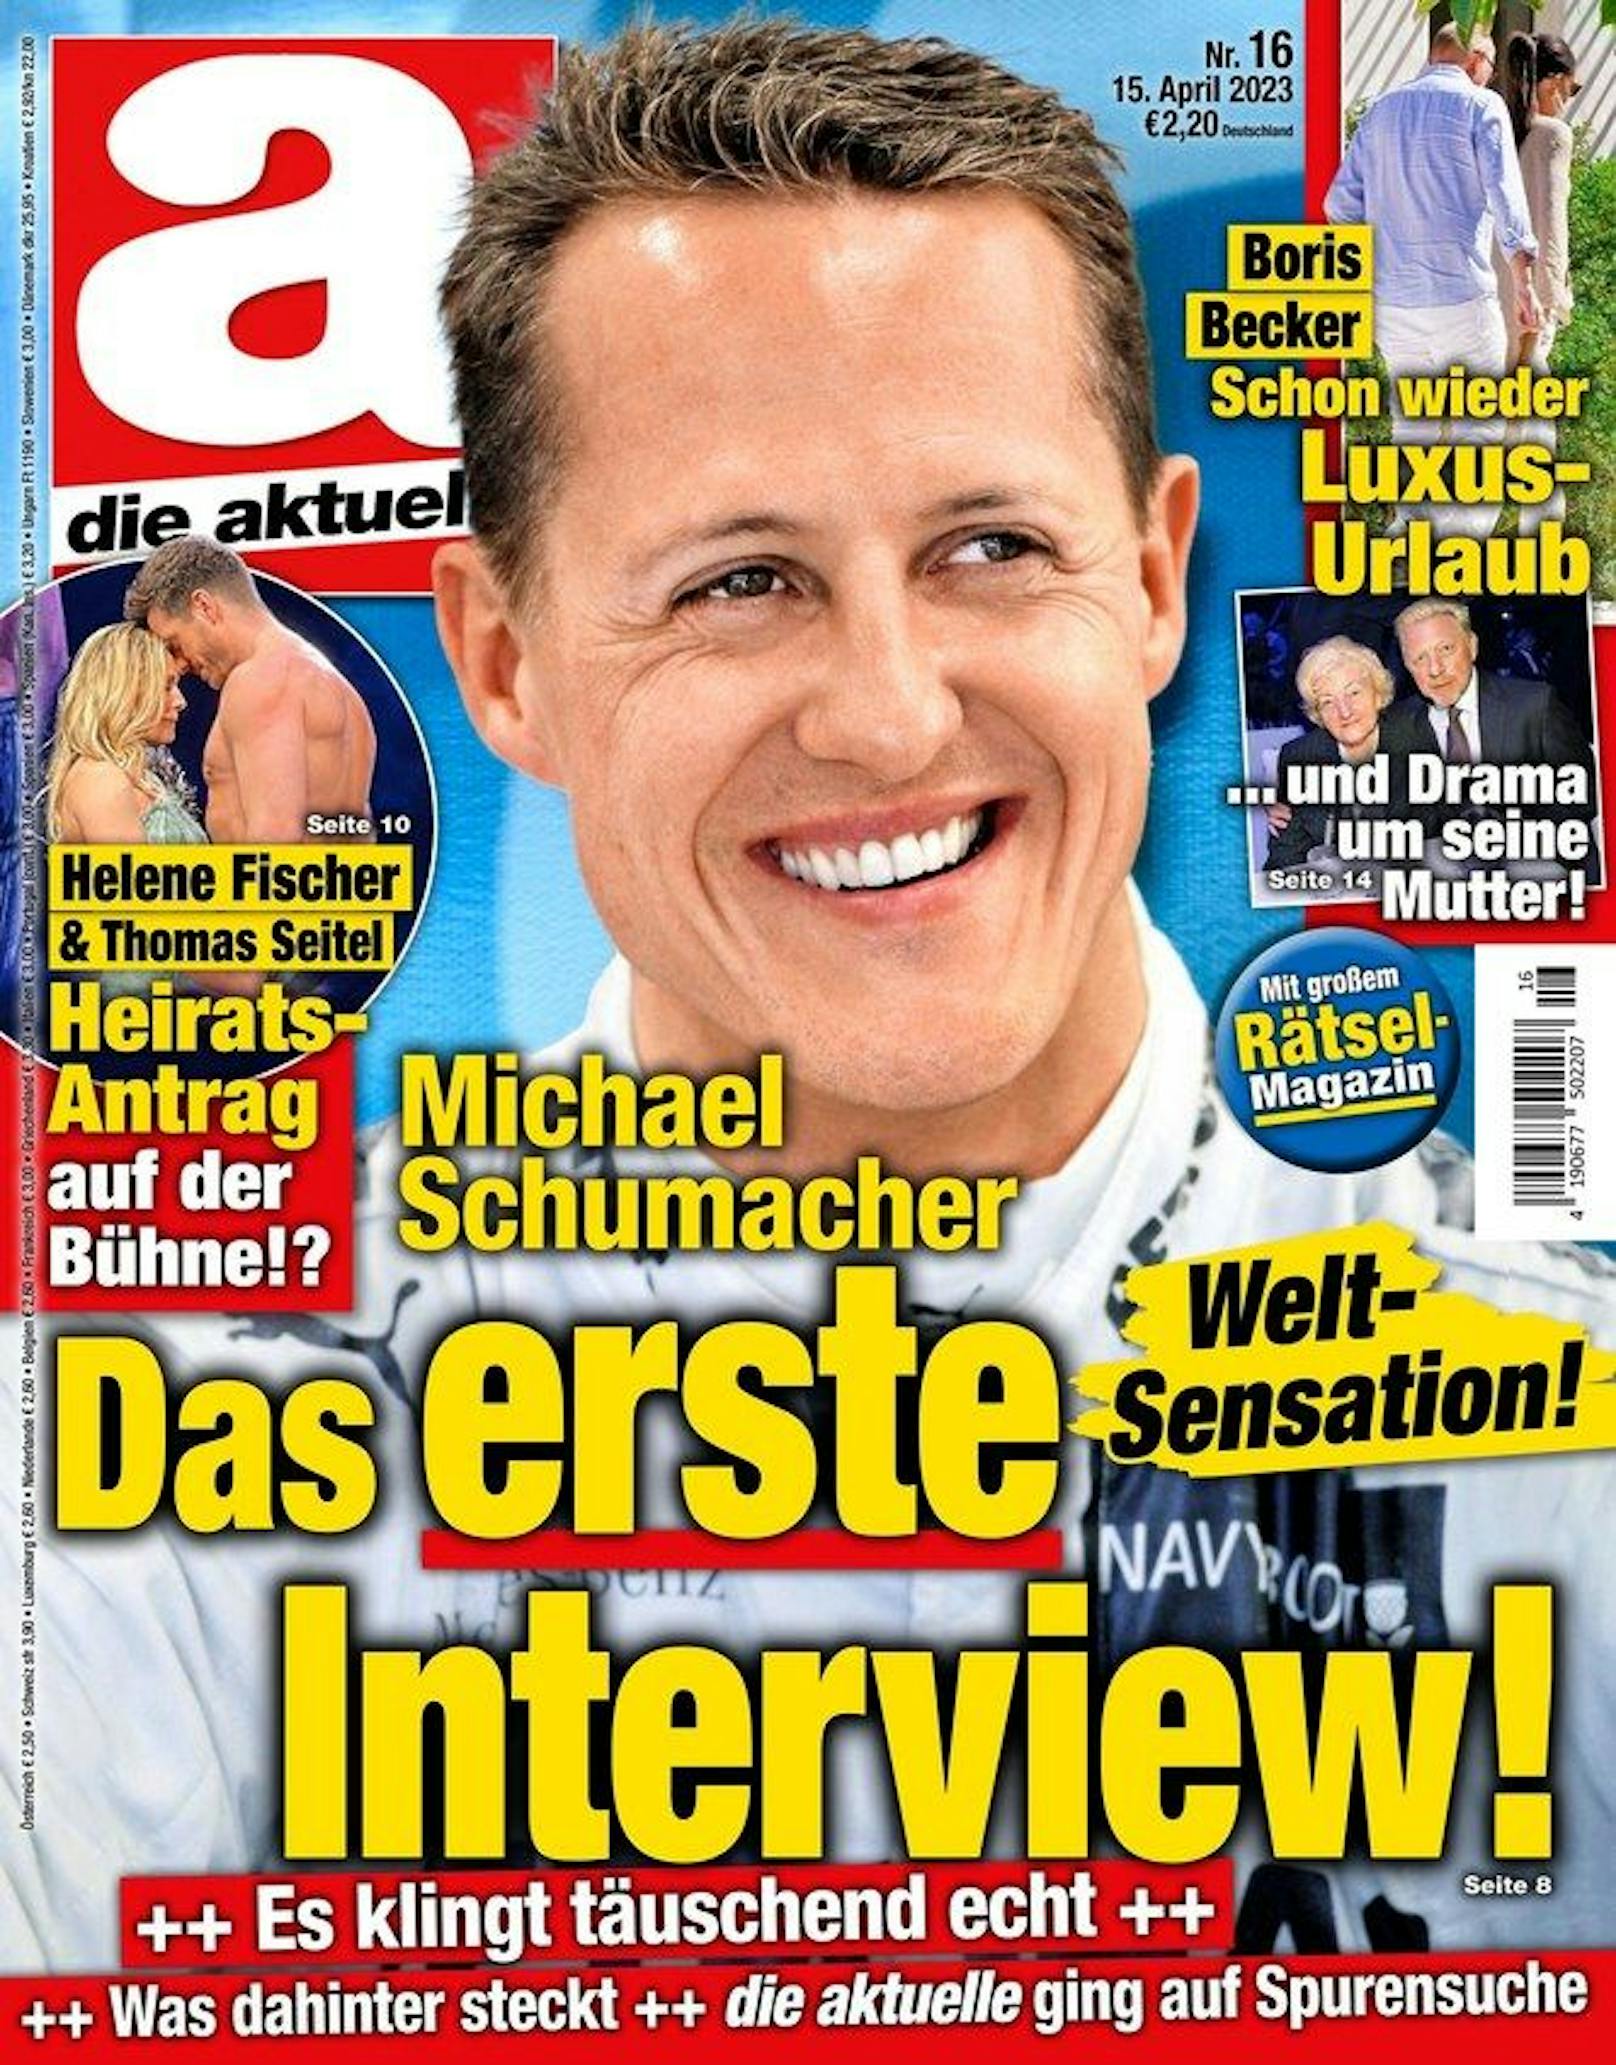 Das Cover, das Schumacher-Fans in die Irre führt